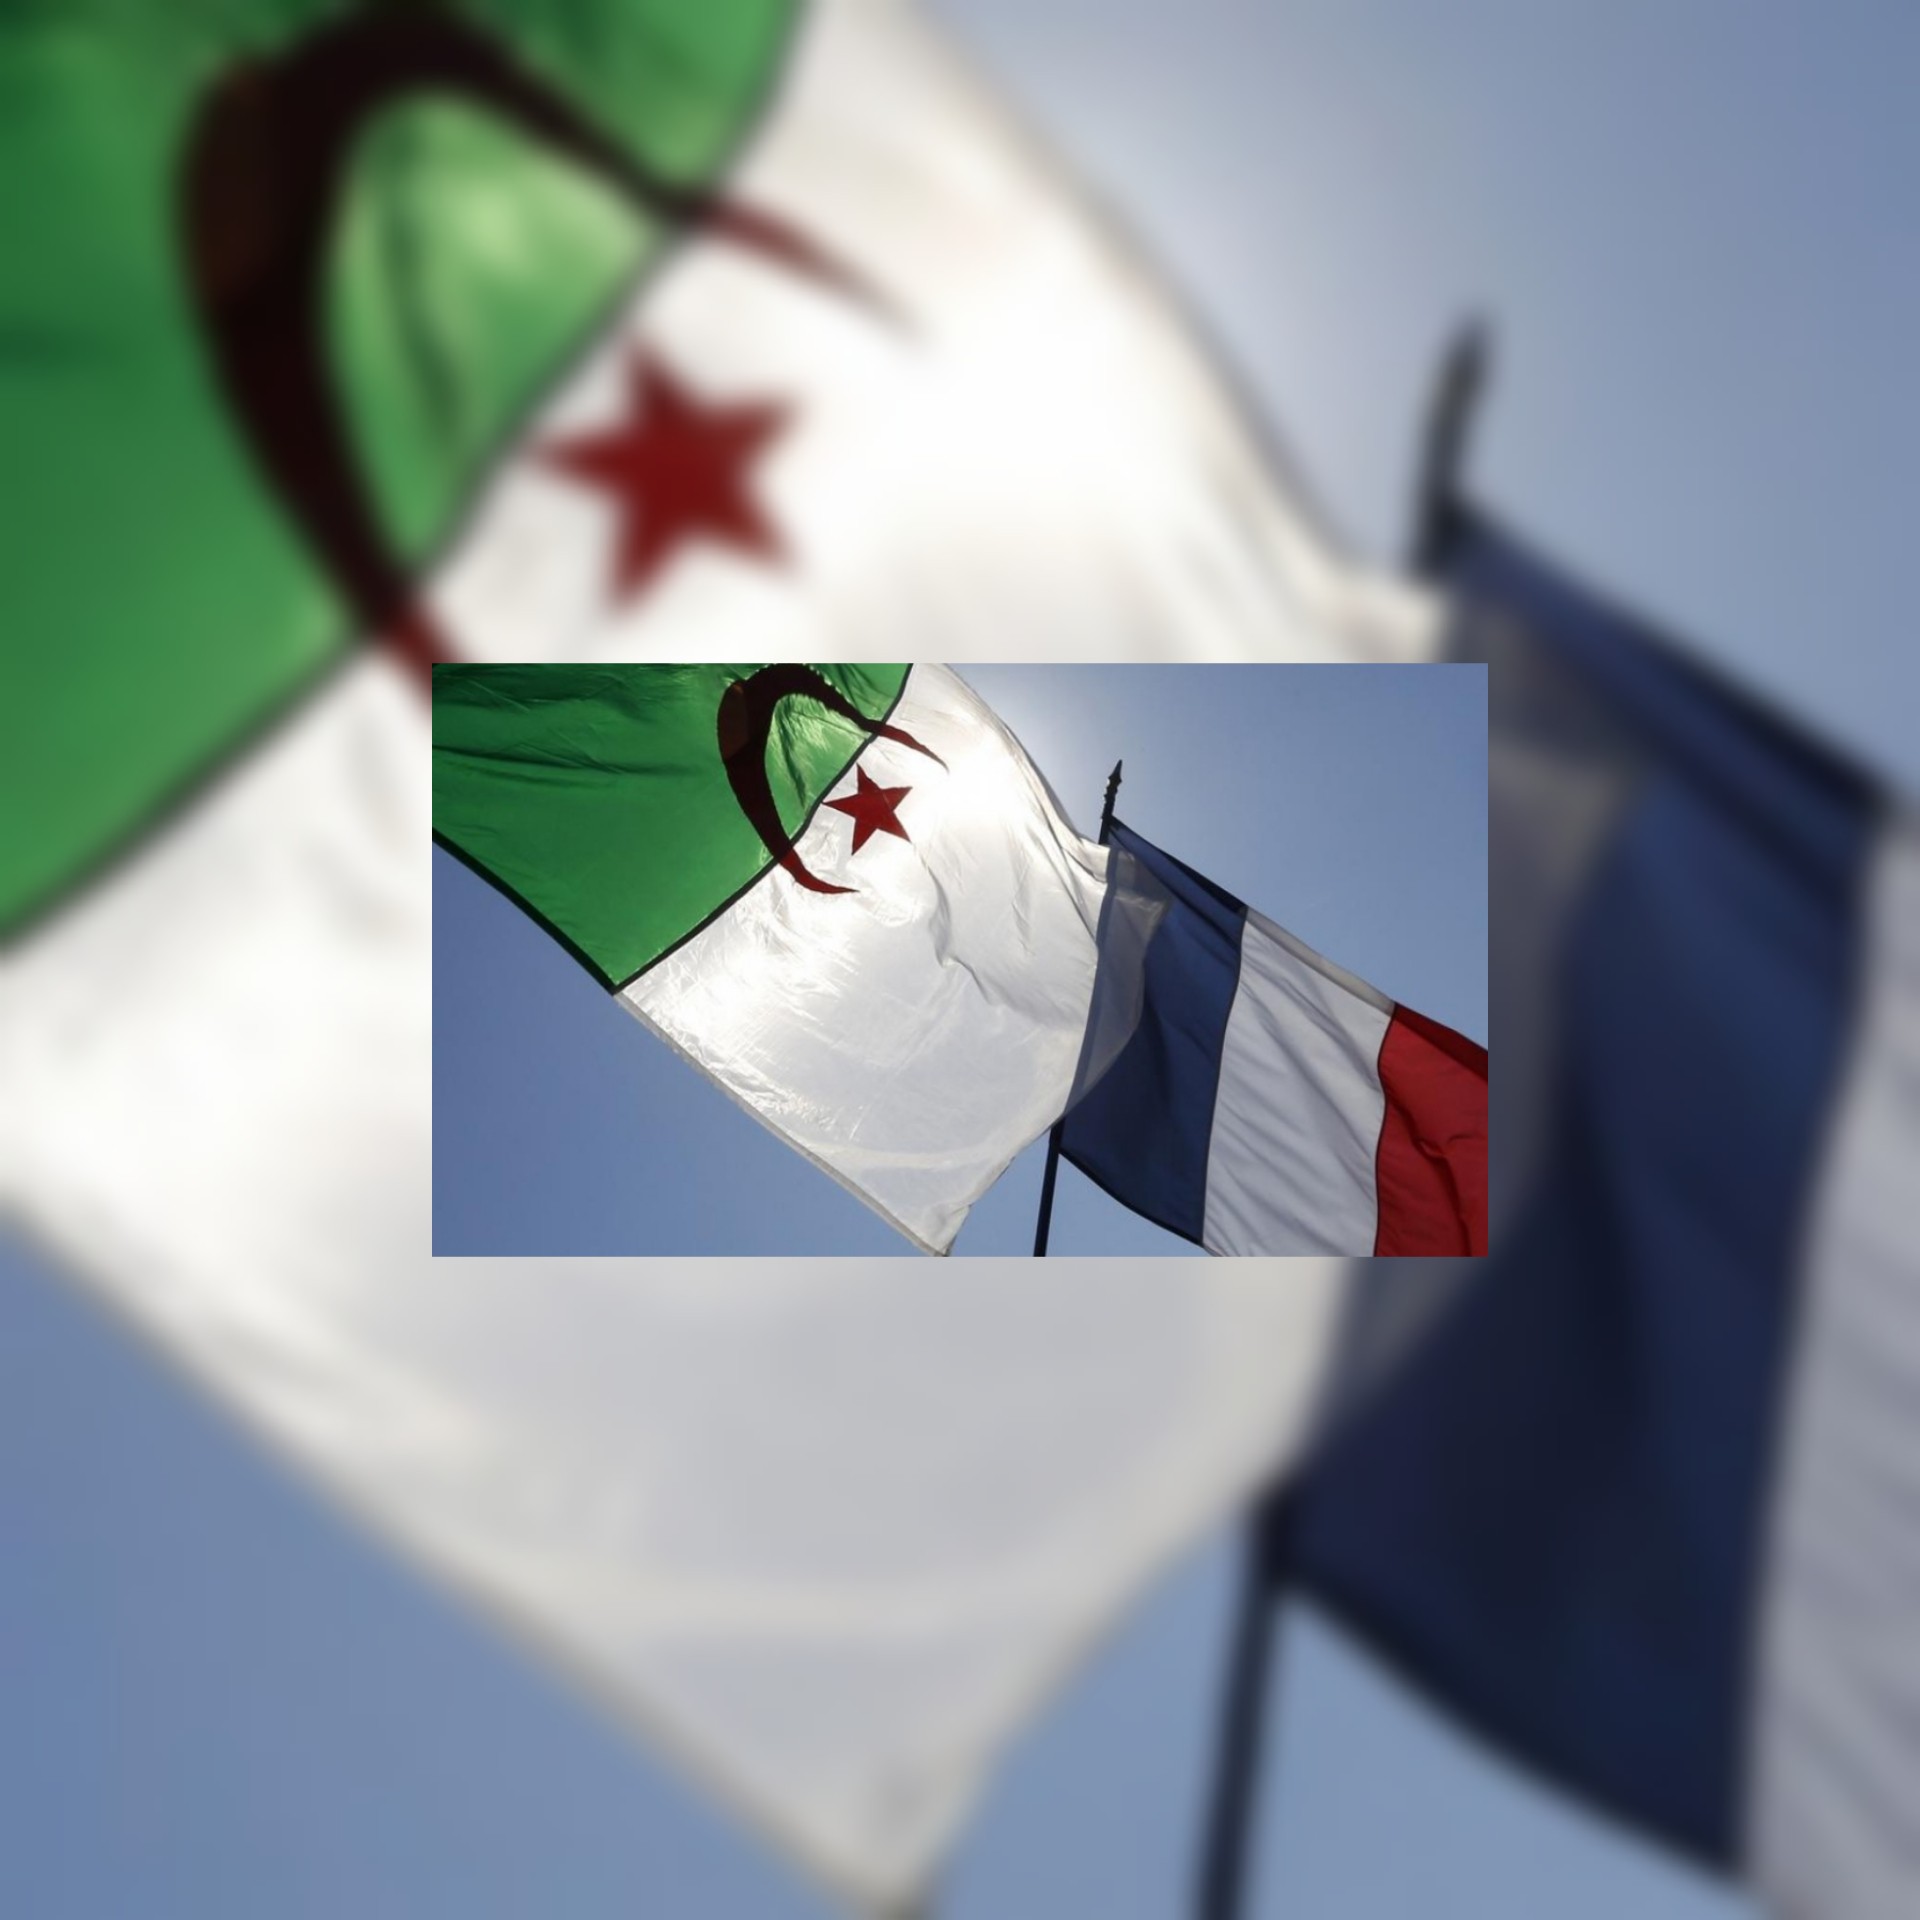 الجزائر تستدعي سفيرها لدى باريس بعد تصريحات ماكرون